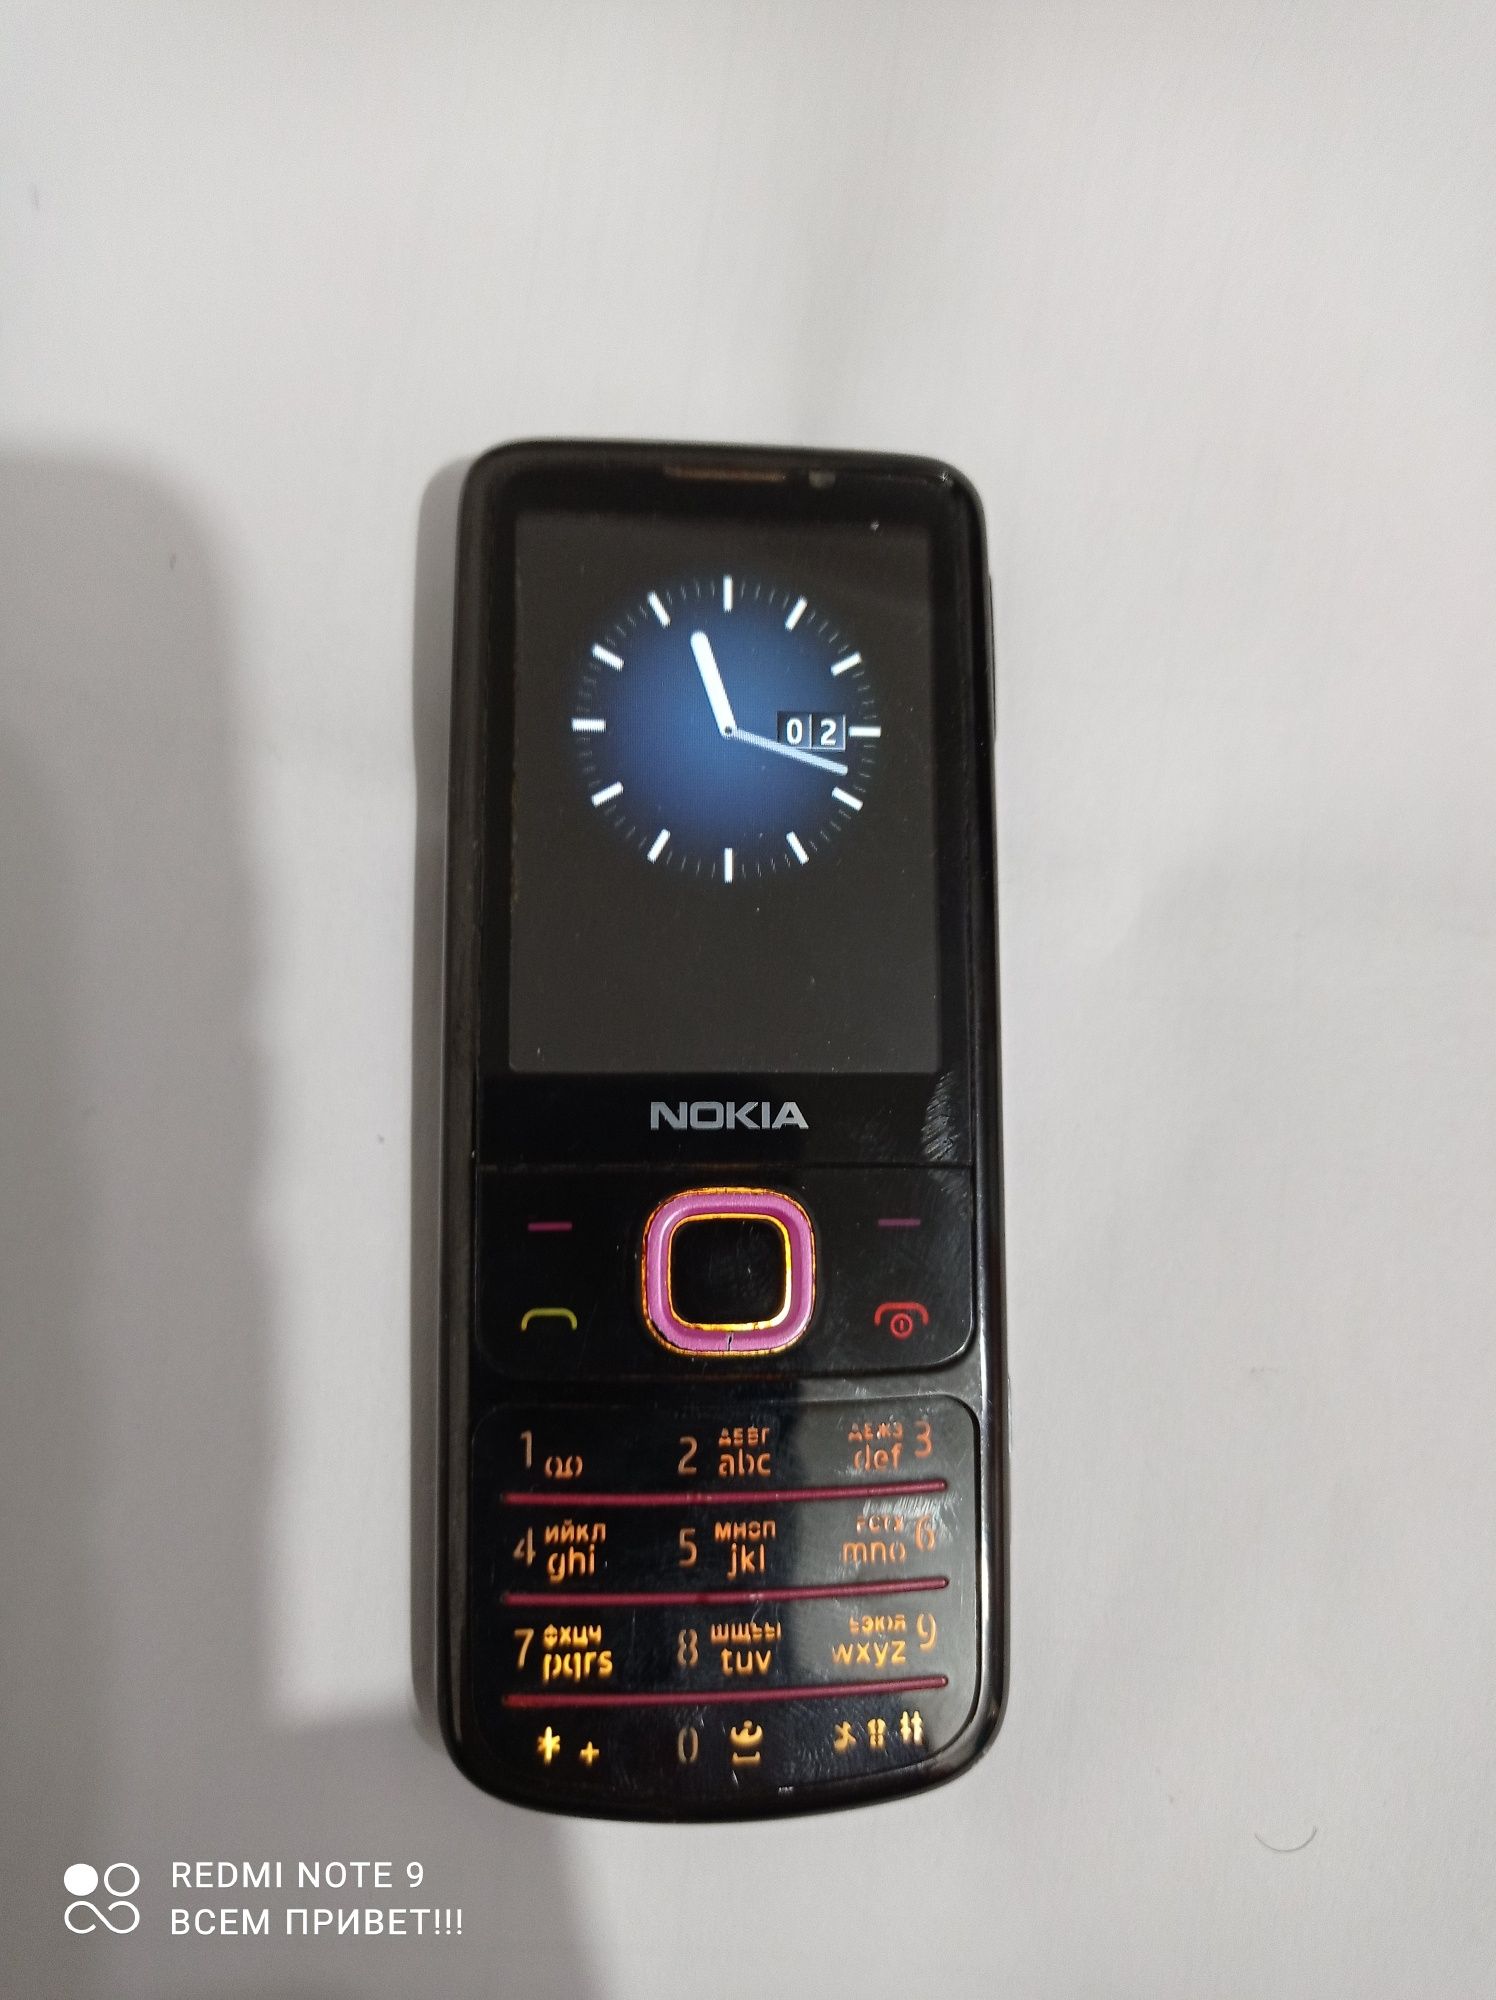 Nokia 67000 classic ,кнопочный телефон читайте описание